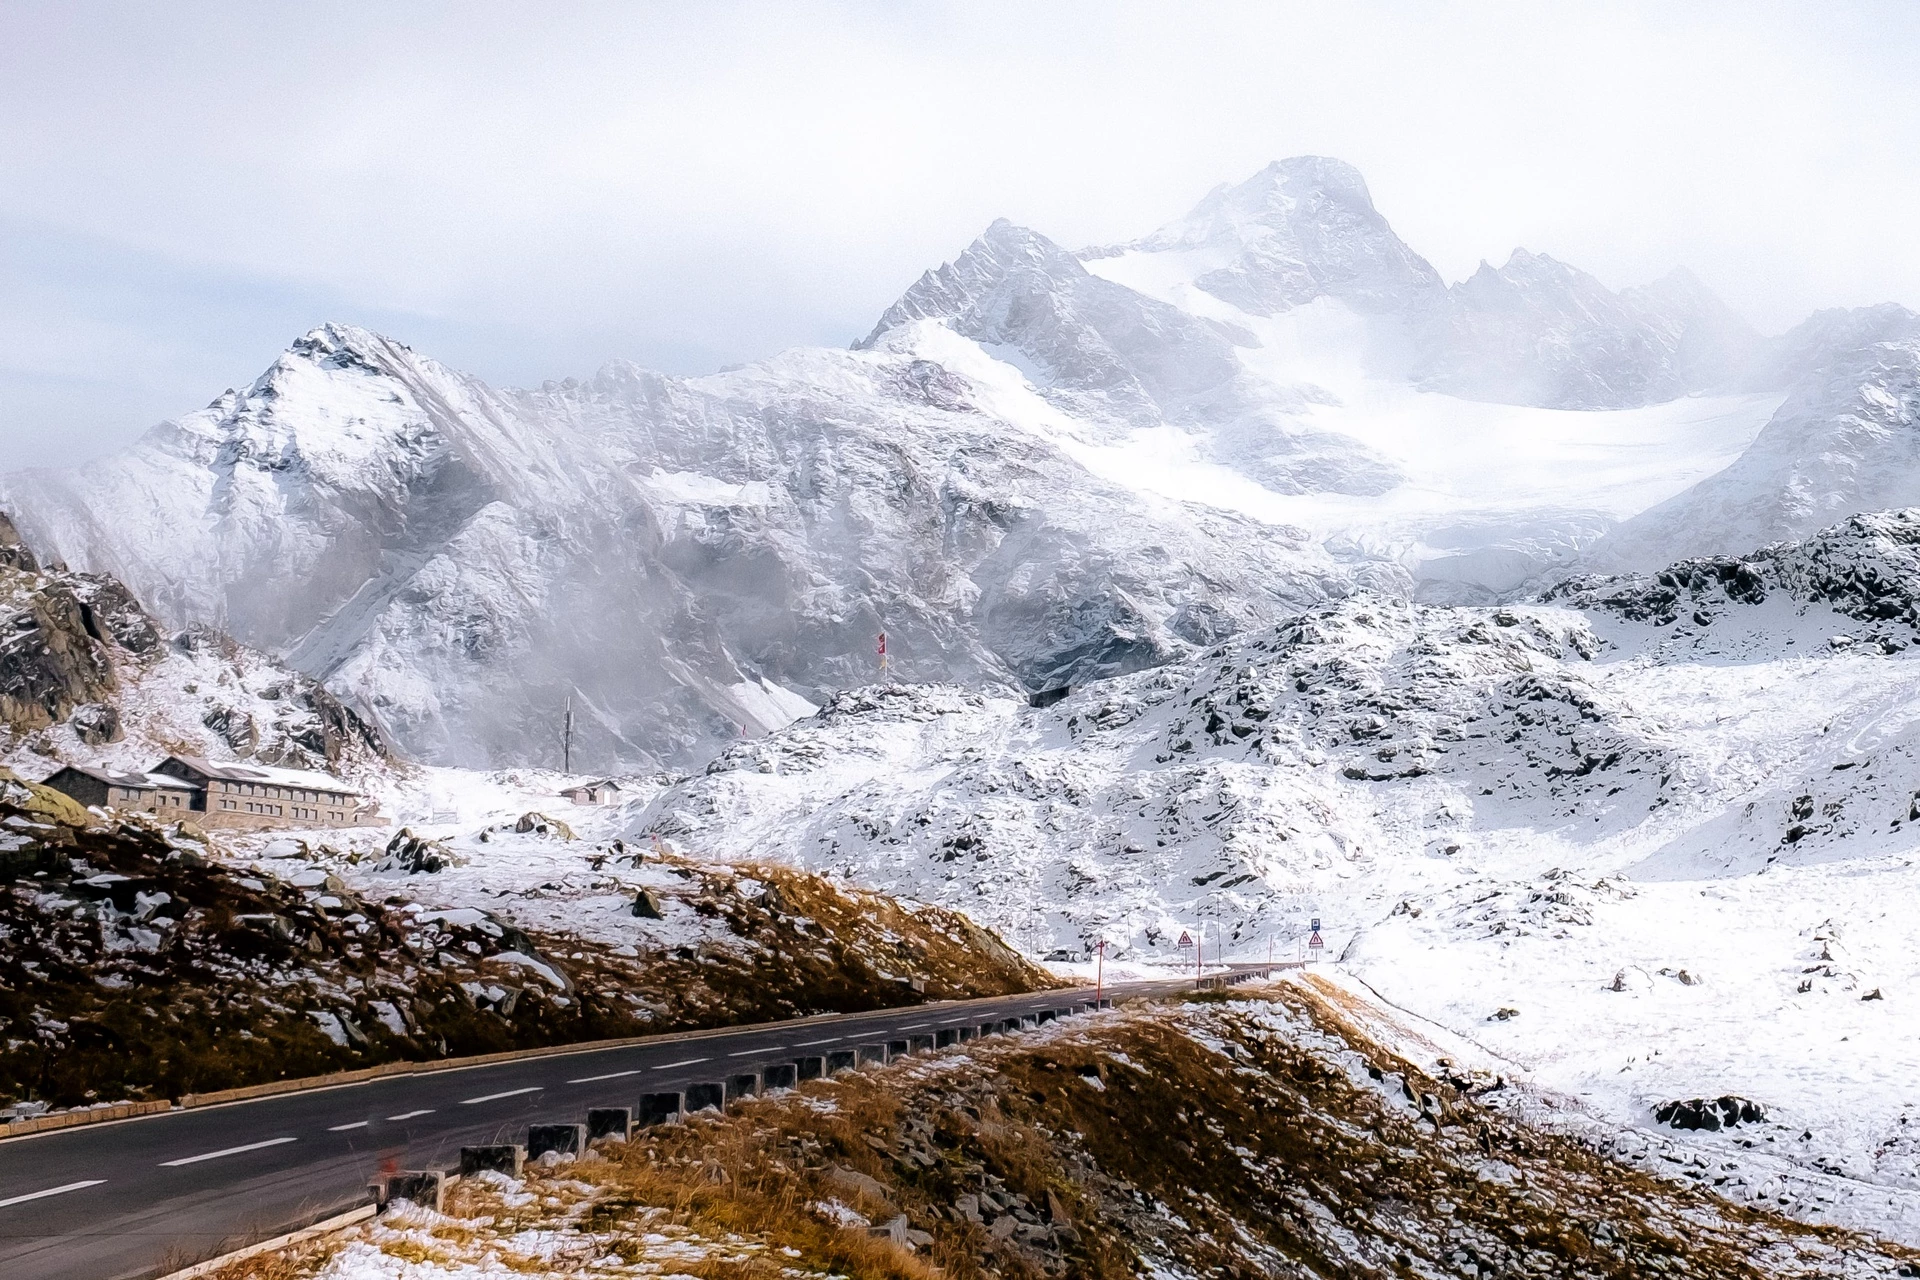 5. Cung đường đèo từ Susten đến Grimsel và Furka, Thụy Sĩ: Cung đường chỉ khoảng hơn 120 km nhưng thách thức nhiều lái xe với các đoạn đổ đèo, khúc cua với tần suất dày chóng mặt. Trong trải nghiệm này, bạn sẽ đi qua nhiều dãy thiên nhiên phong phú từ những khu rừng thảo nguyên tươi tốt, sông băng, hồ chứa đến những đỉnh núi cằn cỗi.